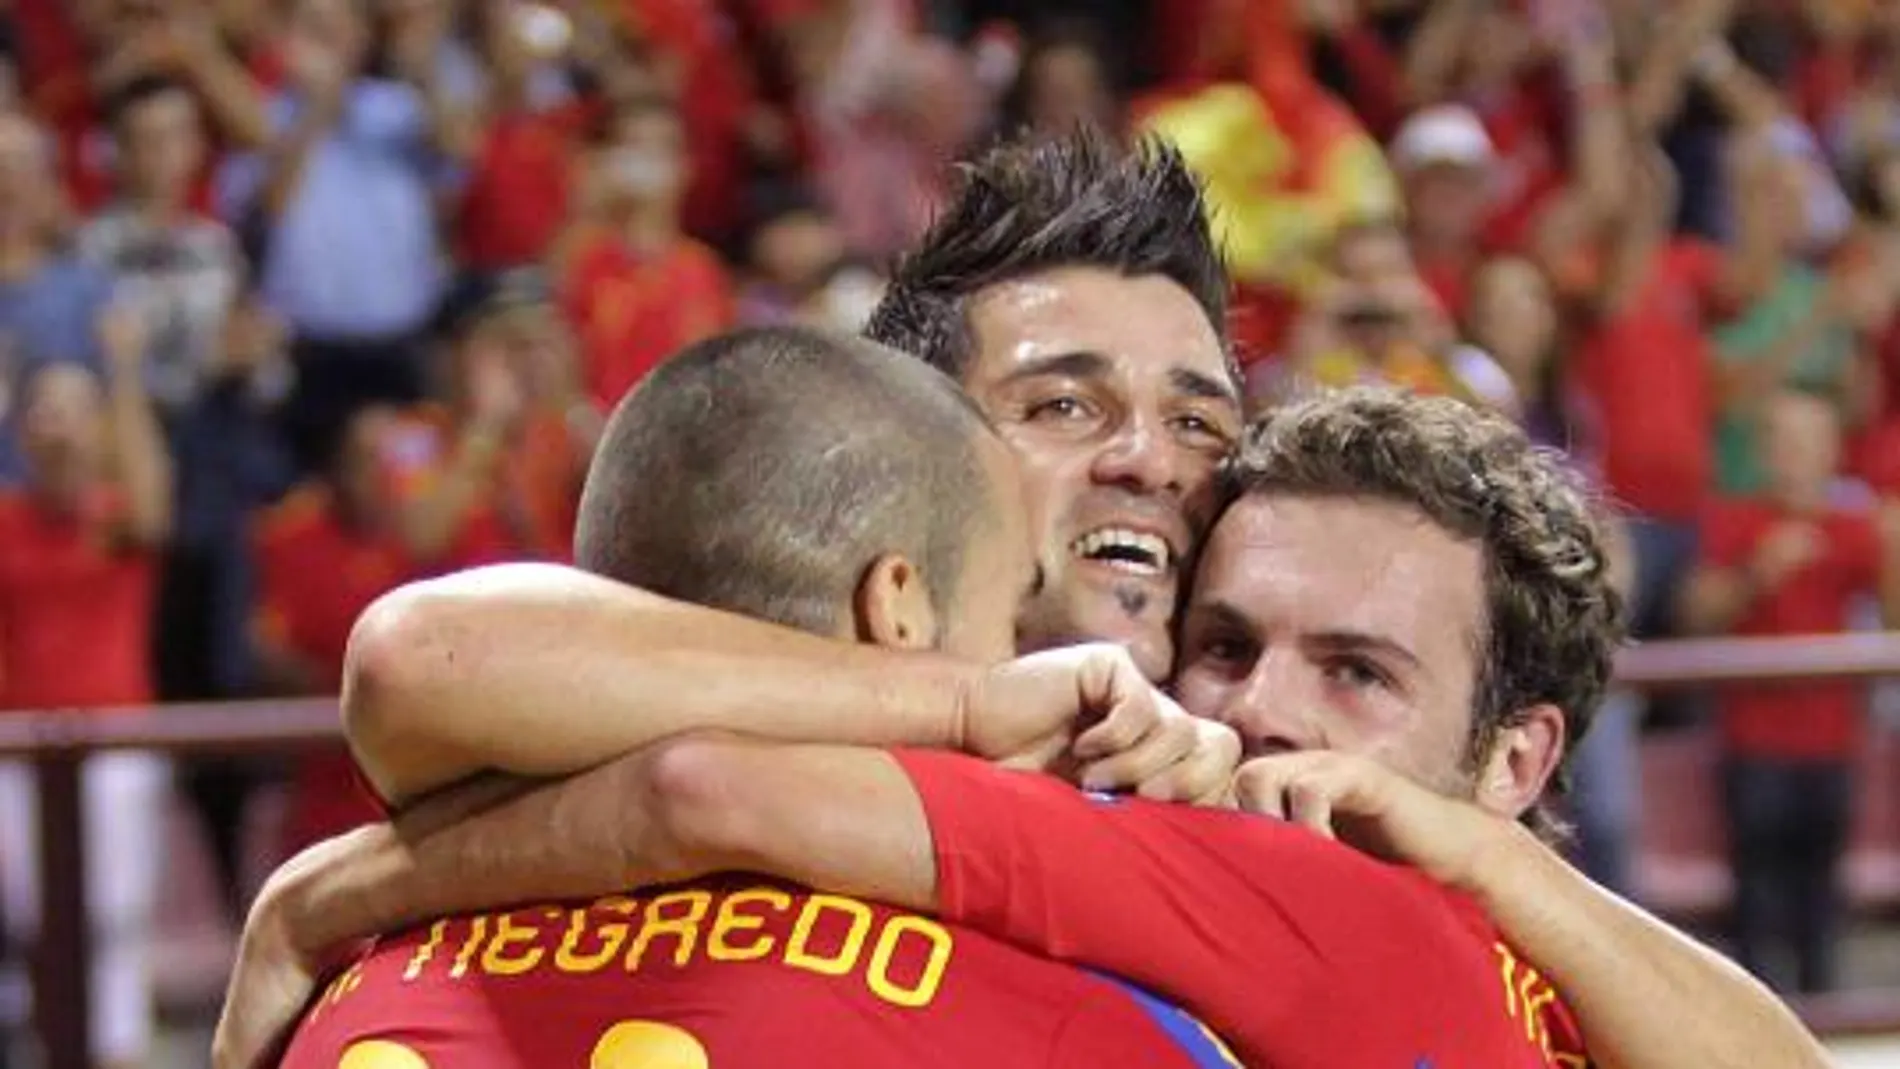 Los delanteros de la selección española de fútbol, Álvaro Negredo, David Villa y Juan Mata (i-d), celebran un gol ante la selección de Liechtenstein